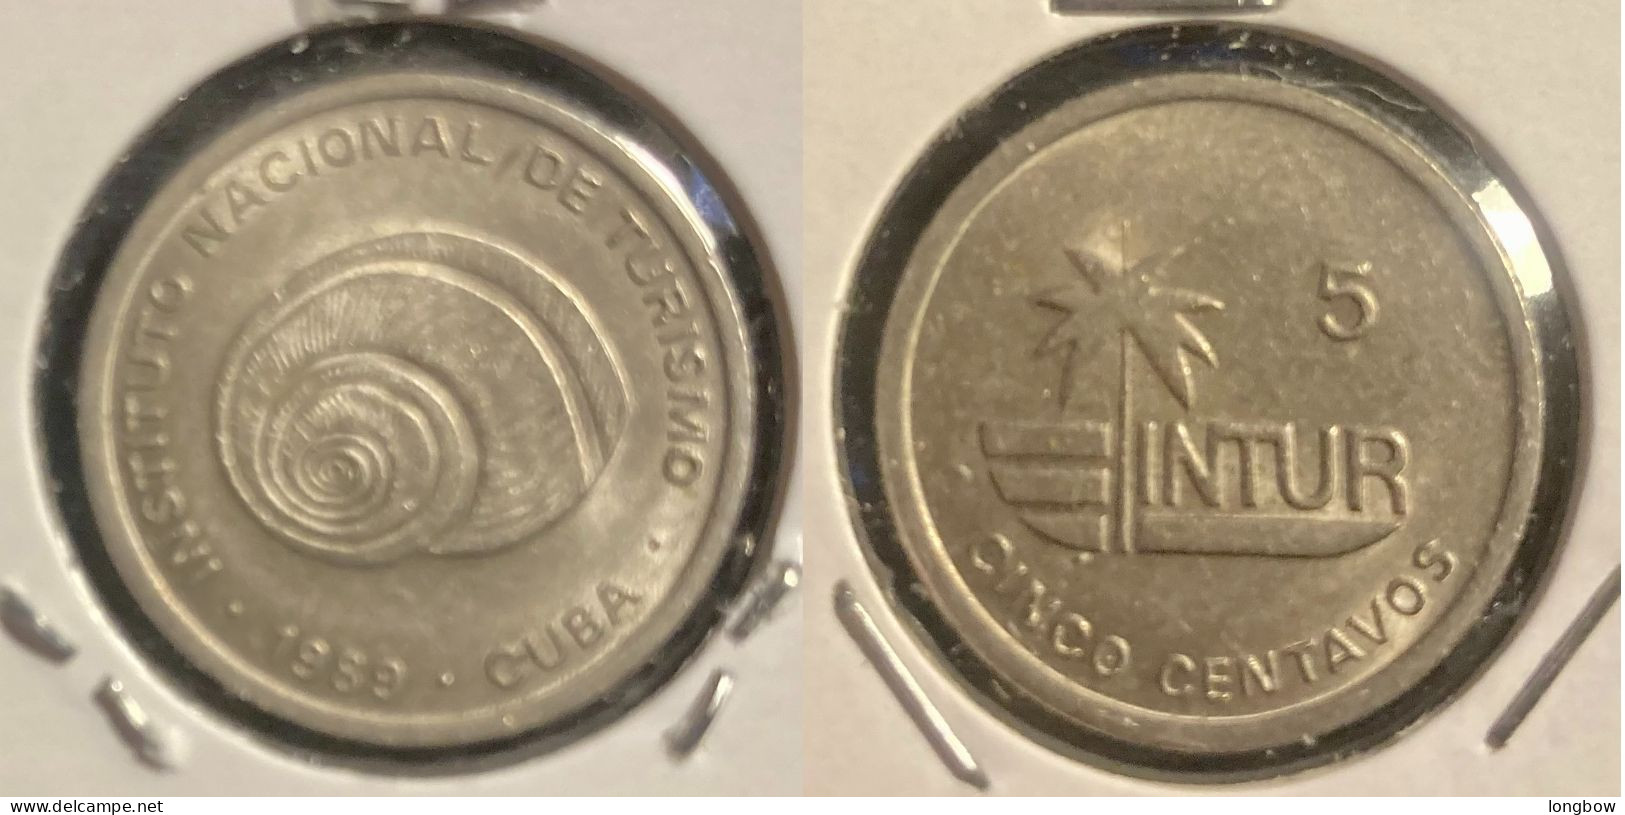 Cuba 5 Centavos 1989 (Small 5 ) KM#412.3 - Used - Cuba